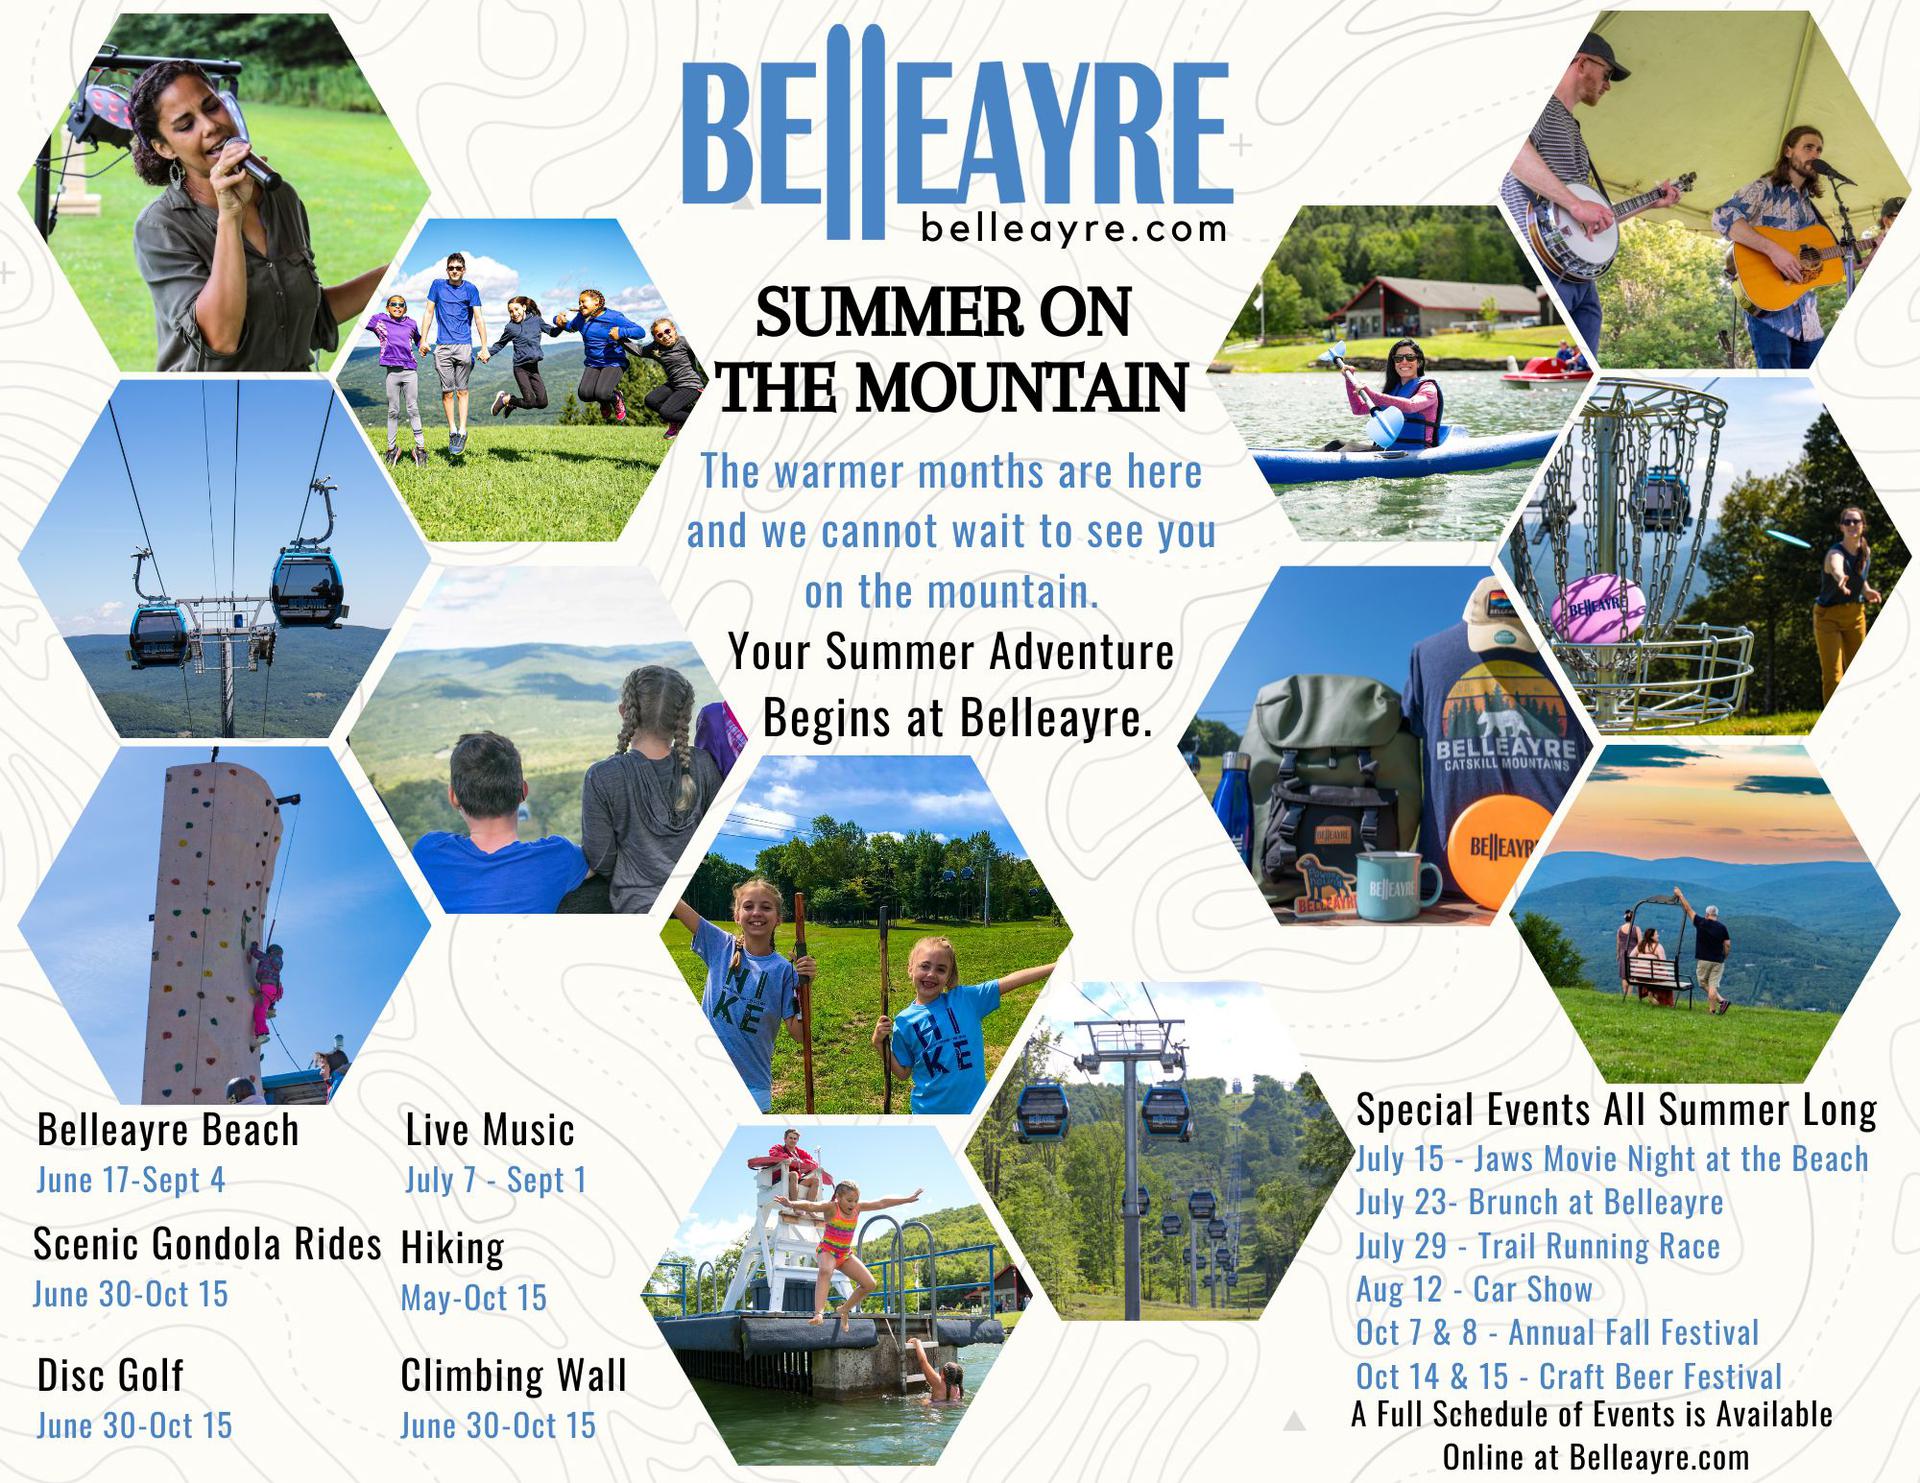 Summer at Belleayre